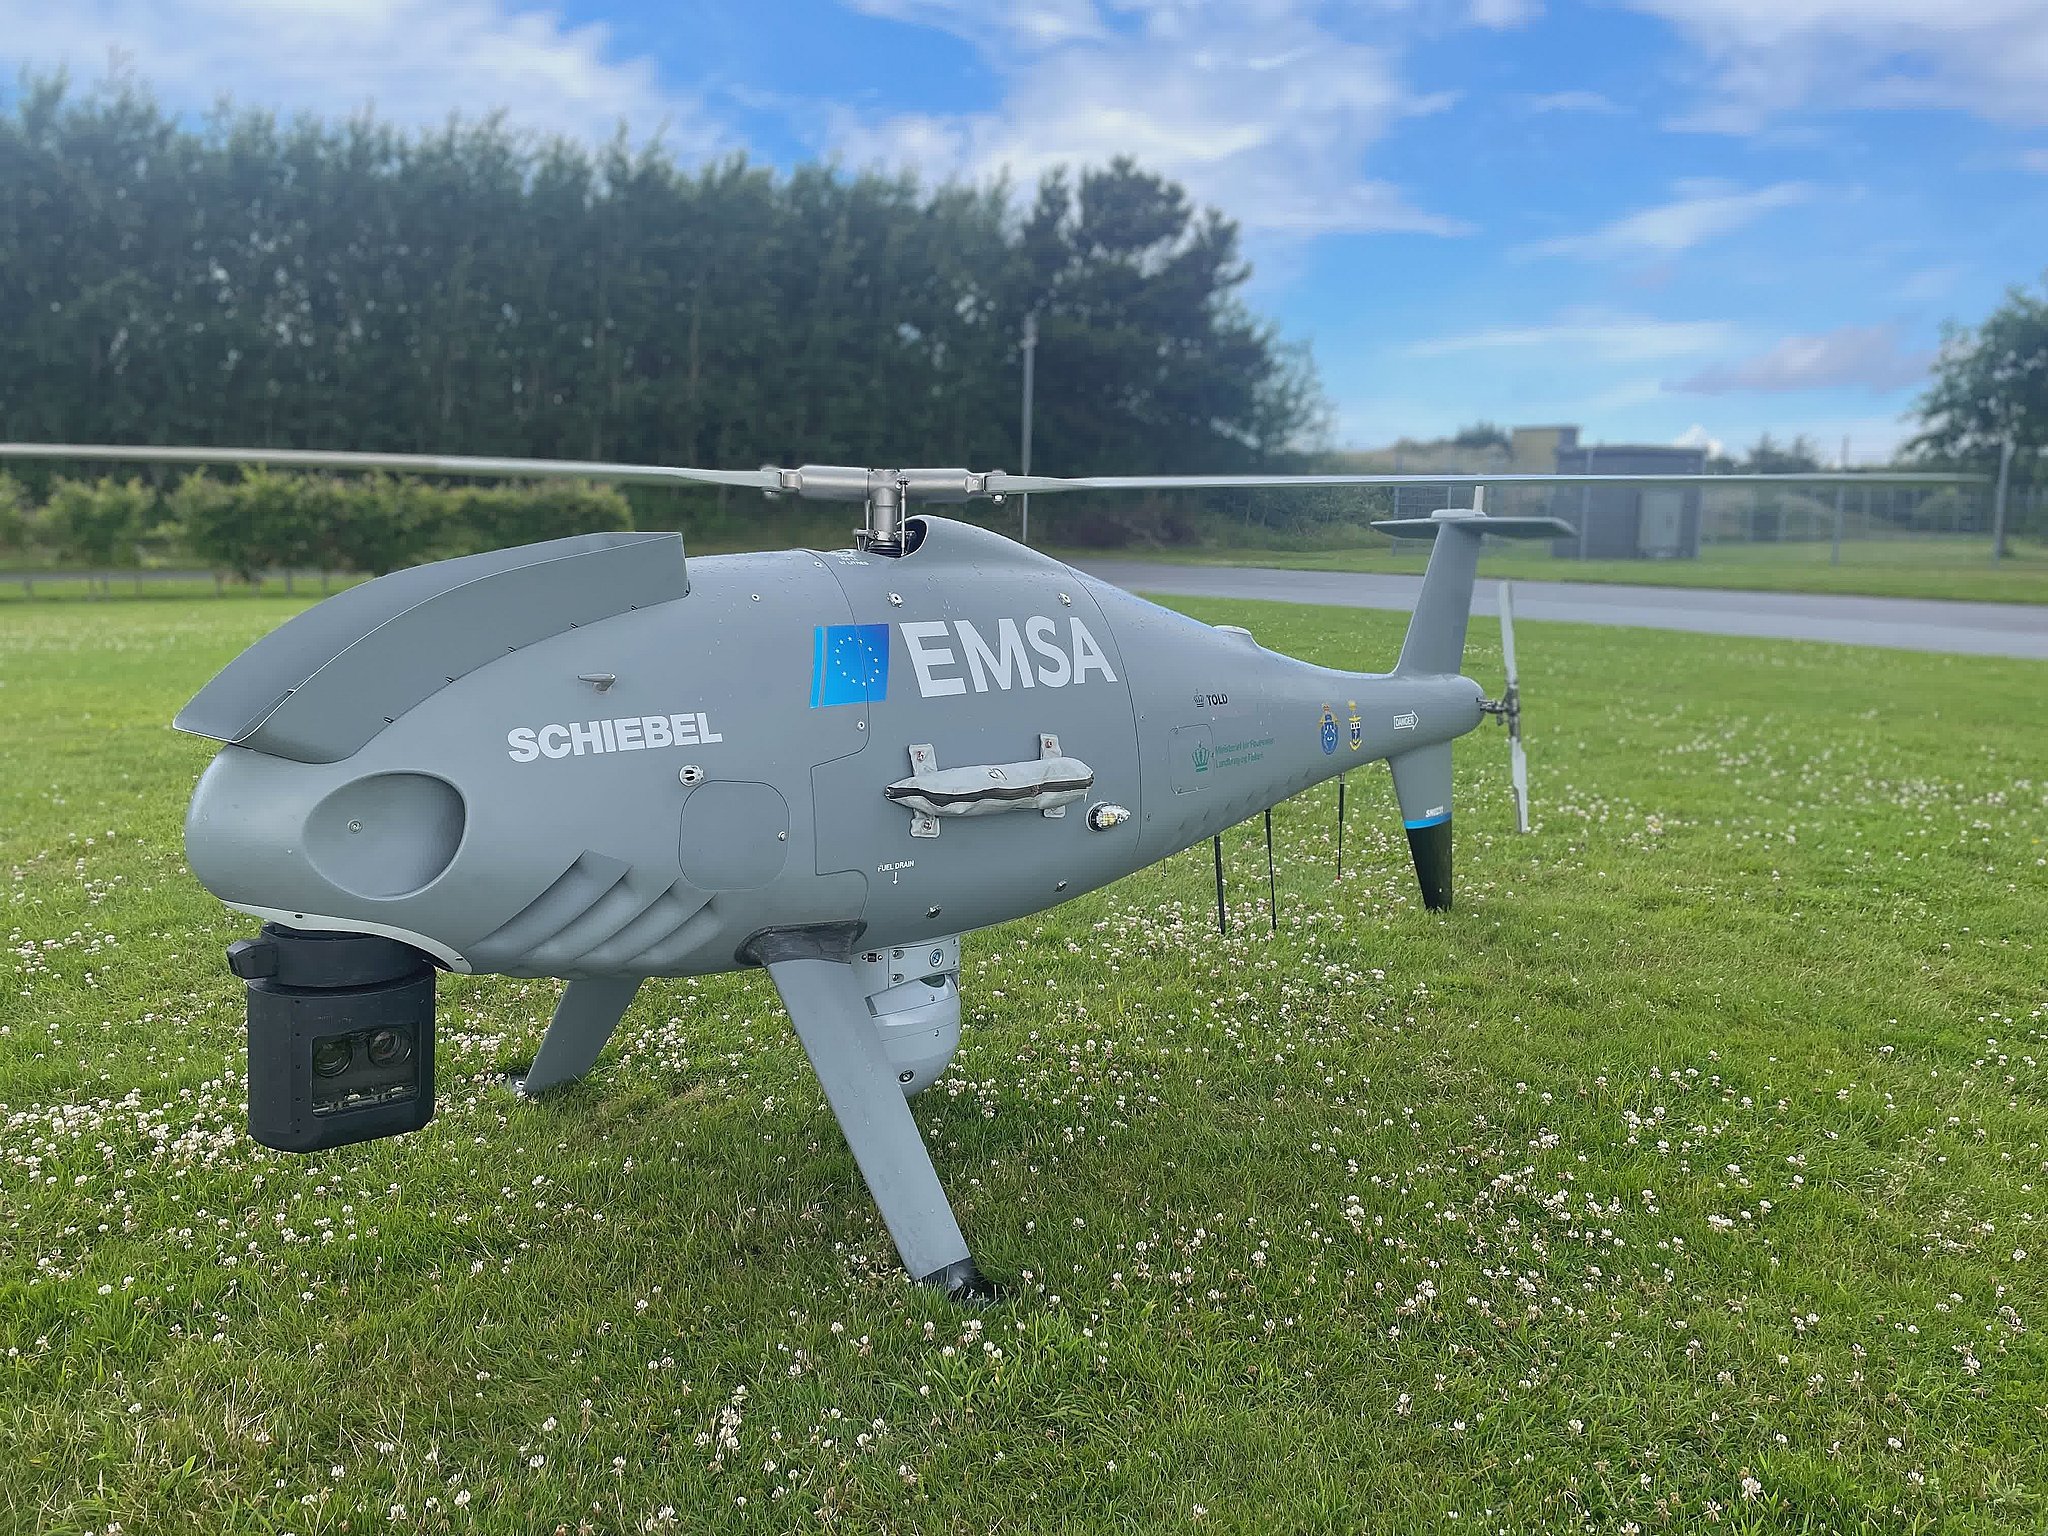 Ass Rettsmedicin søsyge Kæmpe drone holder øje til søs | TV2 Nord